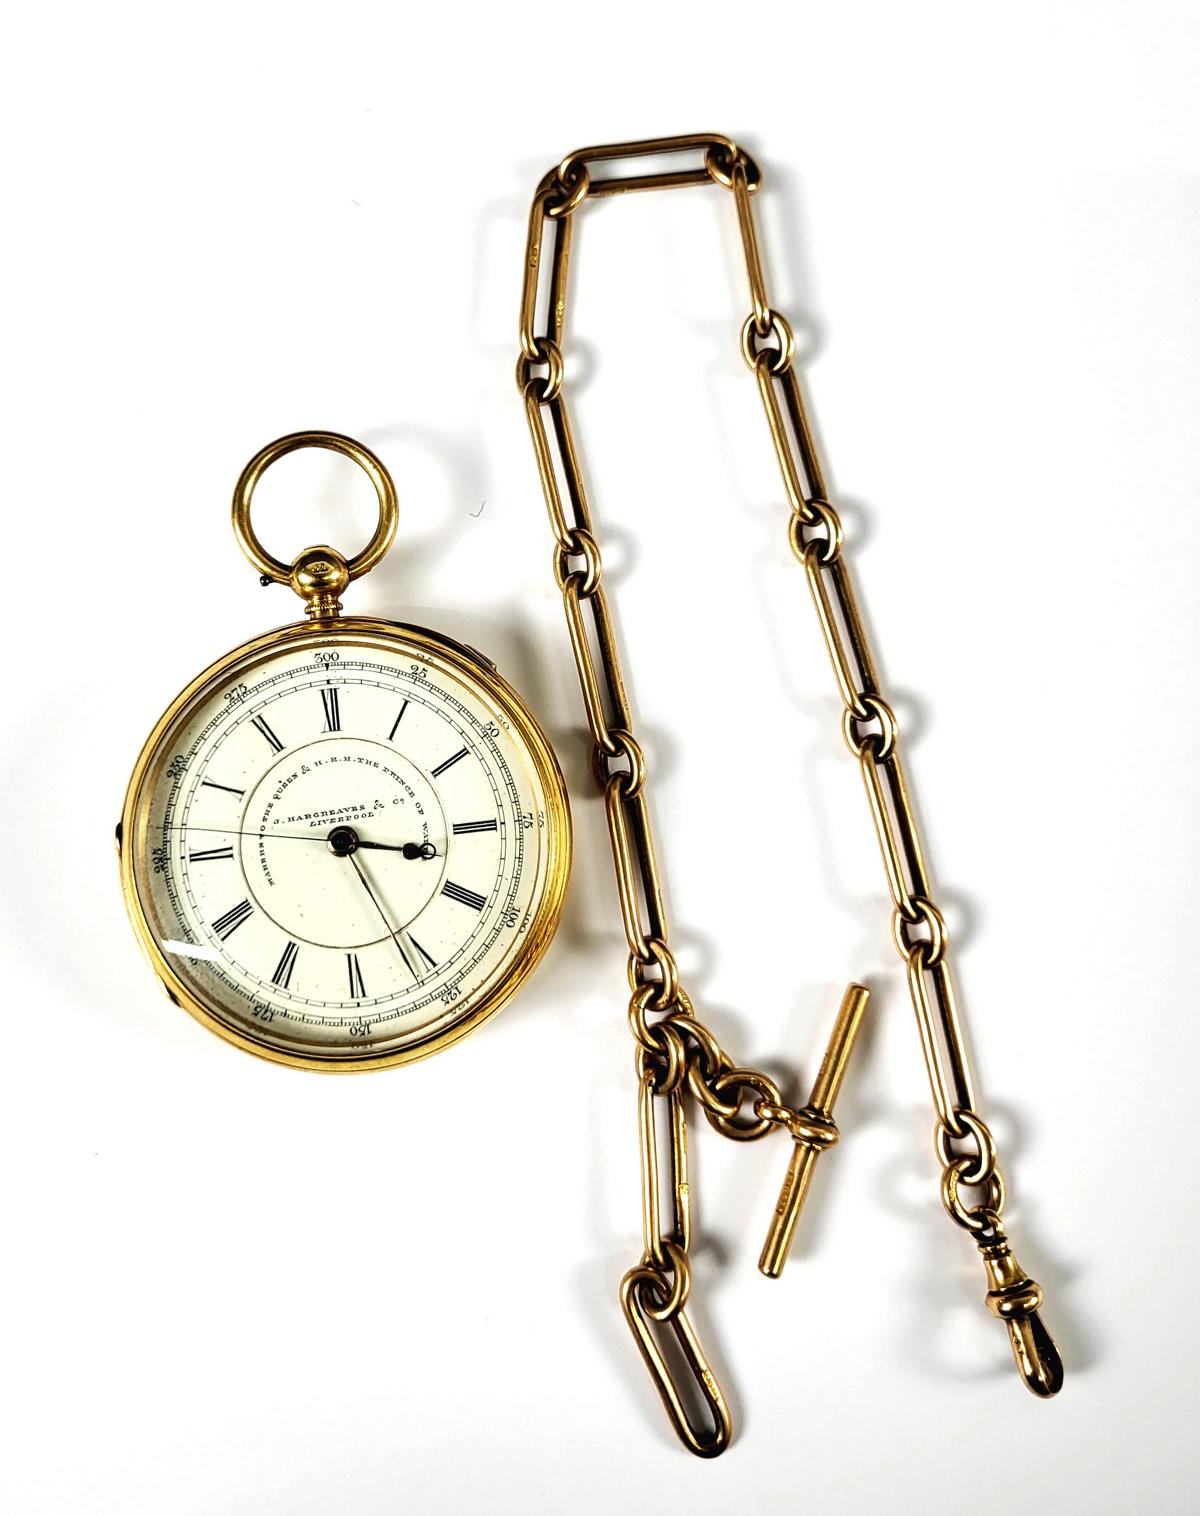 J. Hargreaves & Co, Liverpool Taschenuhr um 1870, 18 Karat Gelbgold, mit Uhrenkette